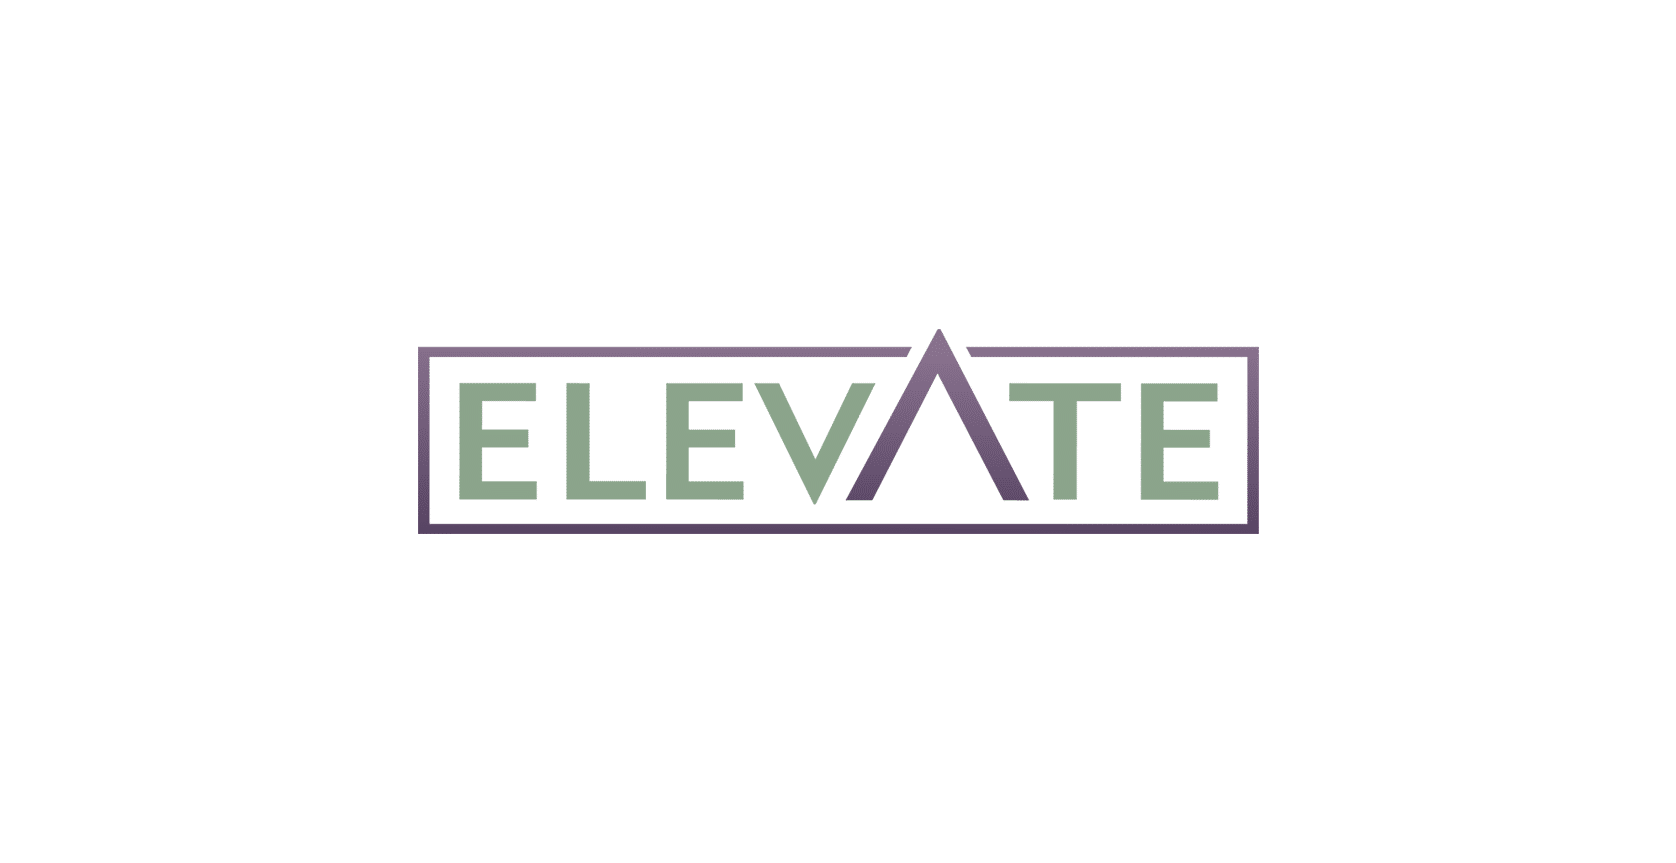 Elevate logo edited - Carlos Rosario